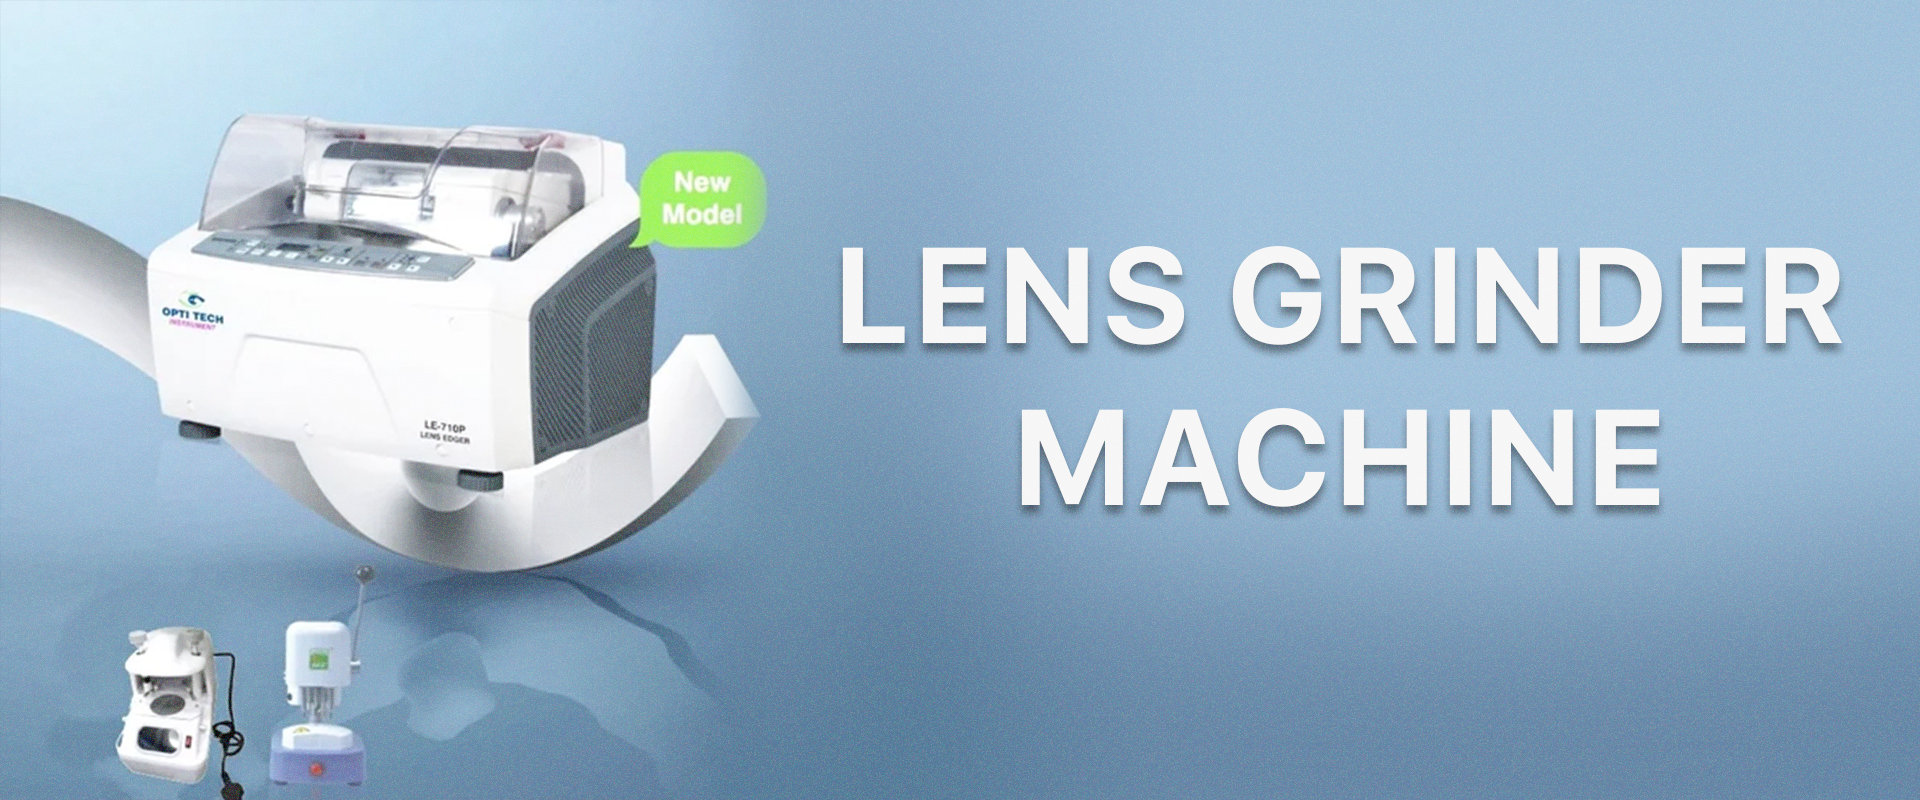 Lens Grinder machine